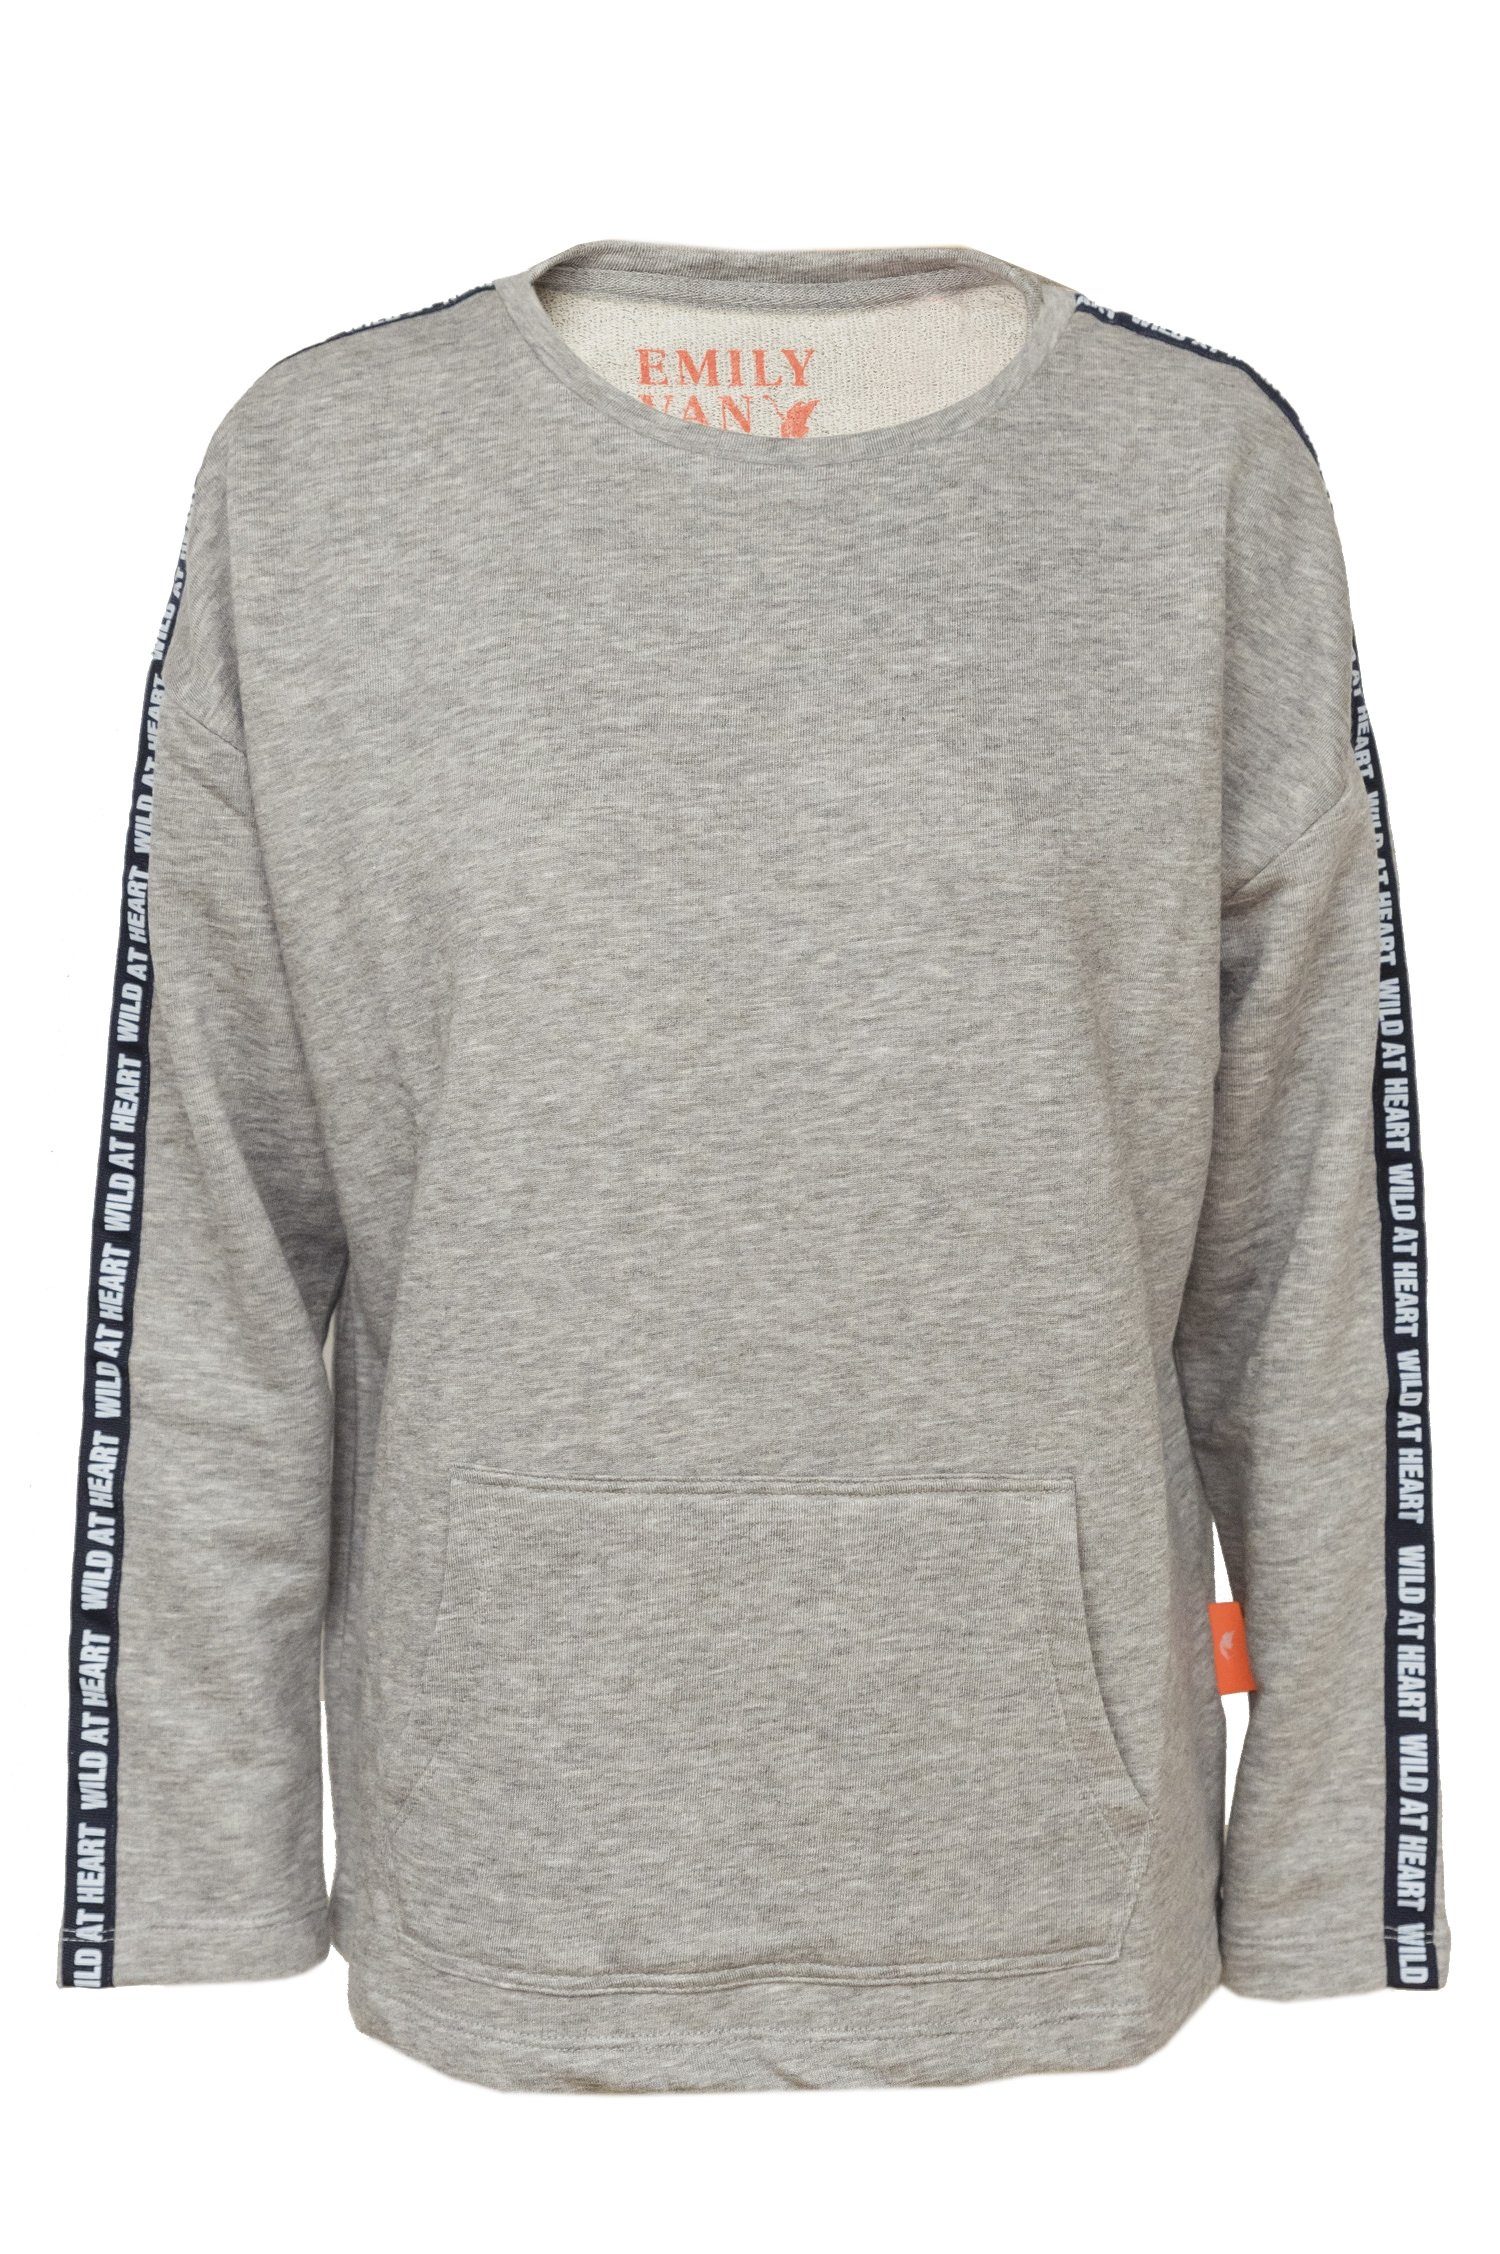 Emily Van Den Bergh Sweater Sweatshirt grey melange | Sweatshirts